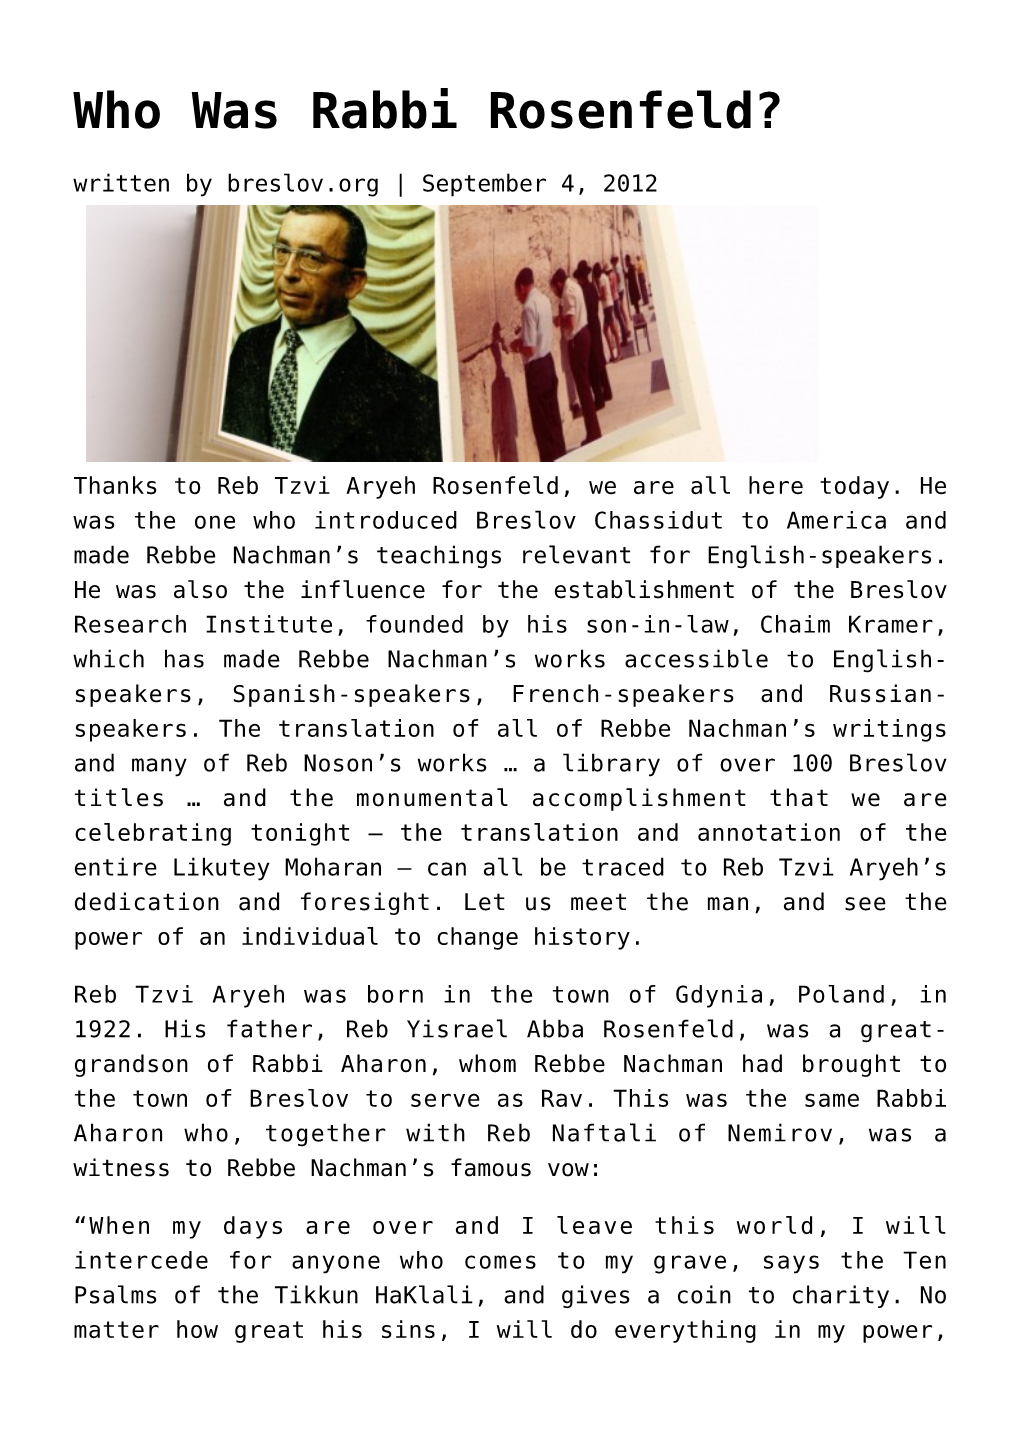 Who Was Rabbi Rosenfeld? Written by Breslov.Org | September 4, 2012